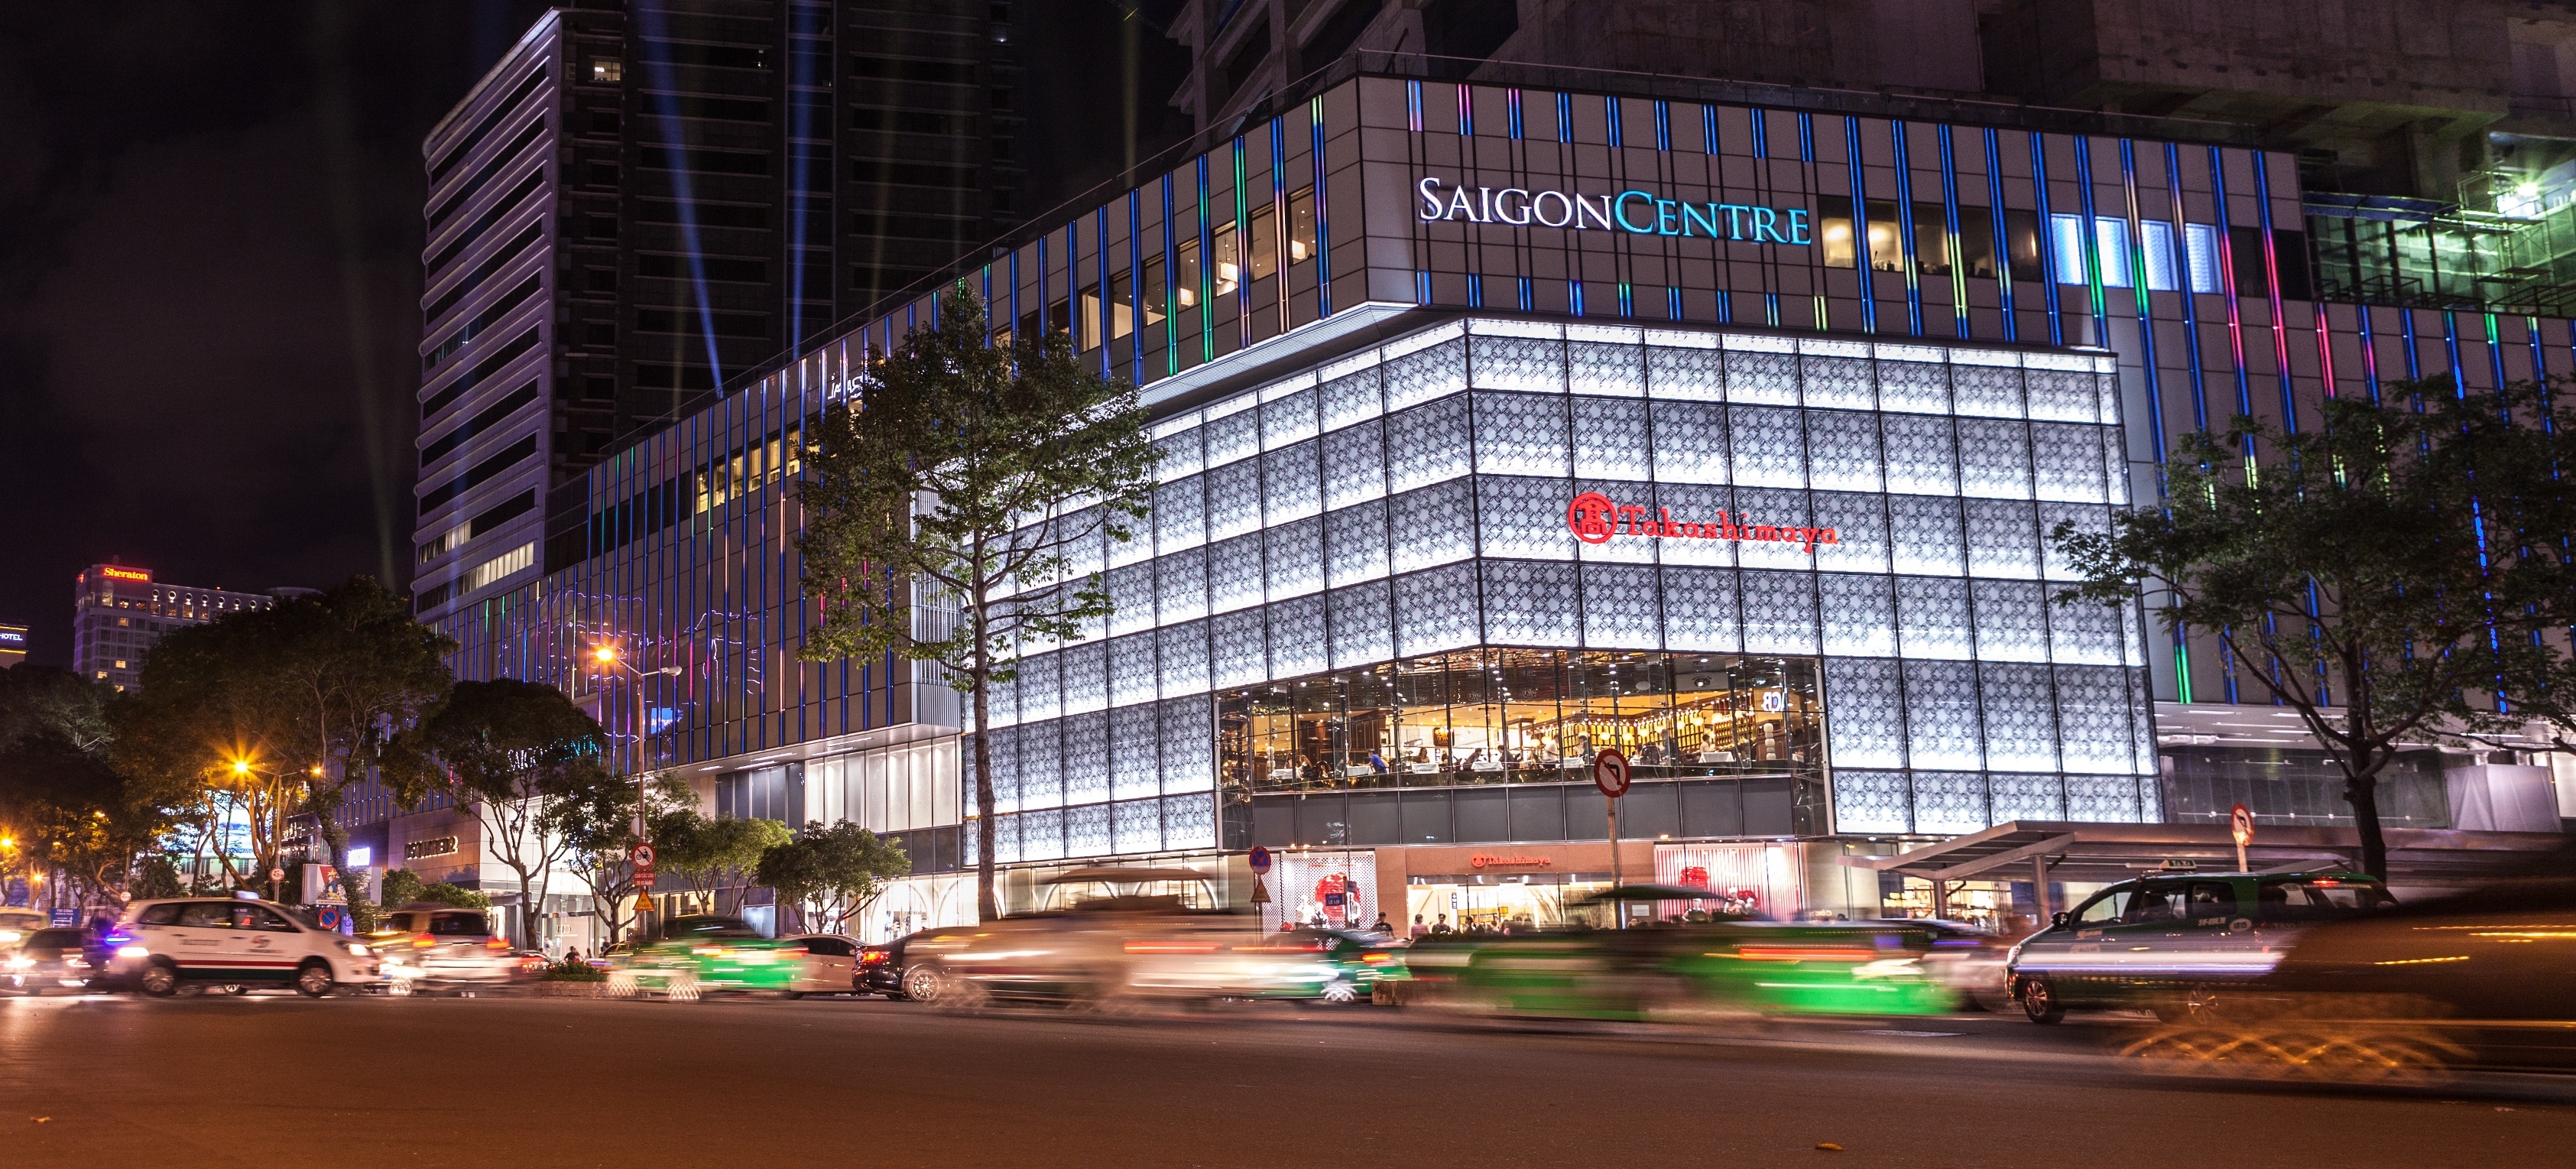 
Trung tâm thương mại Takashimaya sầm uất tọa lạc tại tòa nhà Saigon Centre.
